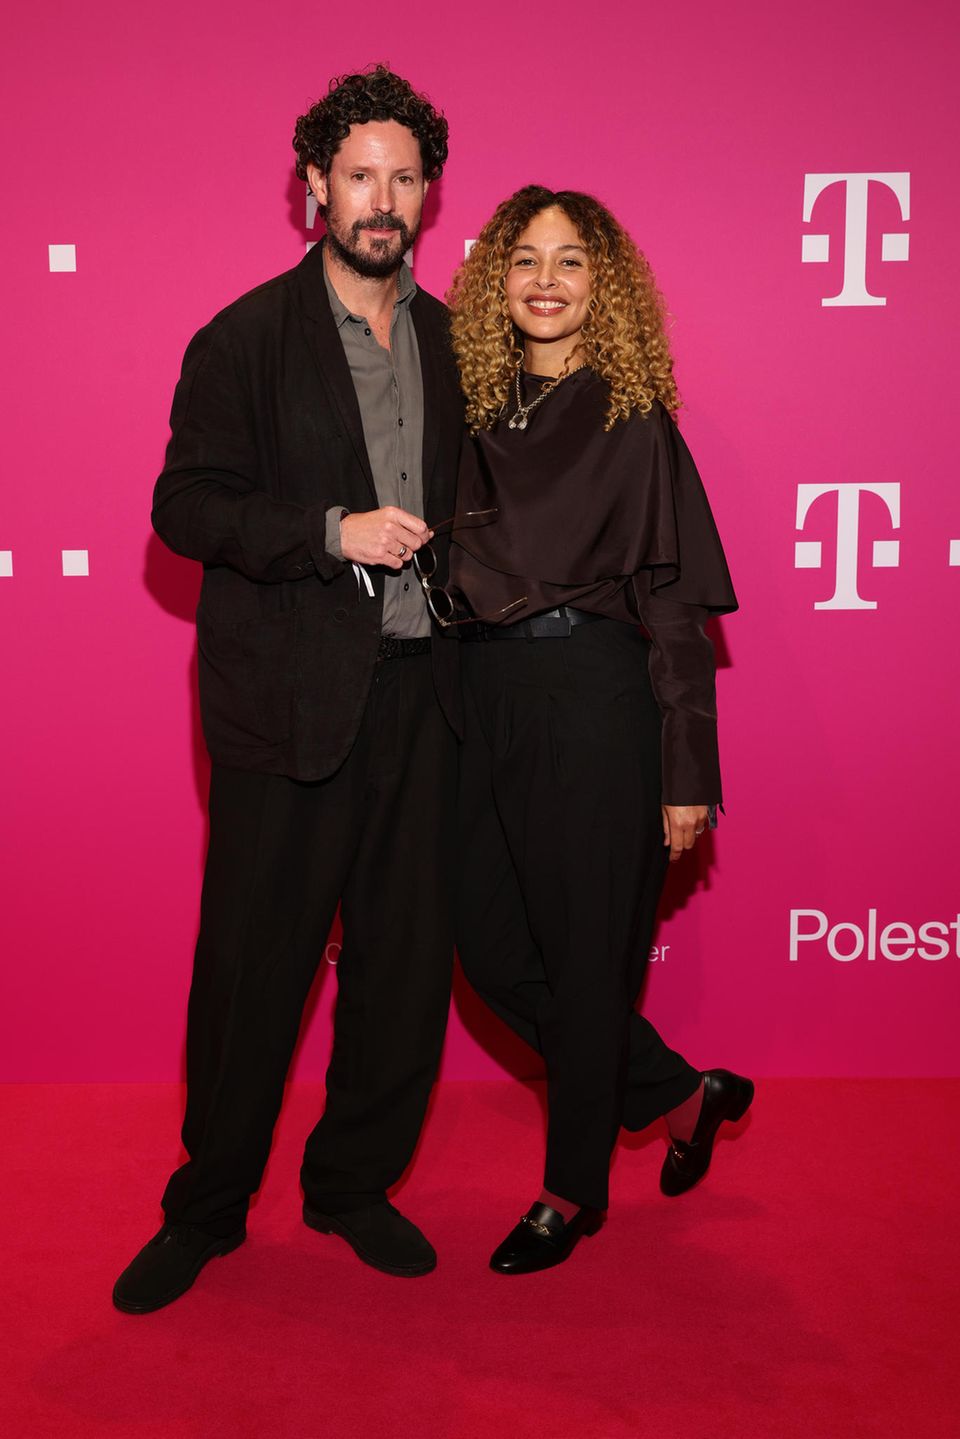 Wer sonst noch feiert: Max Herre und Joy Denalane beim Telekom-Event